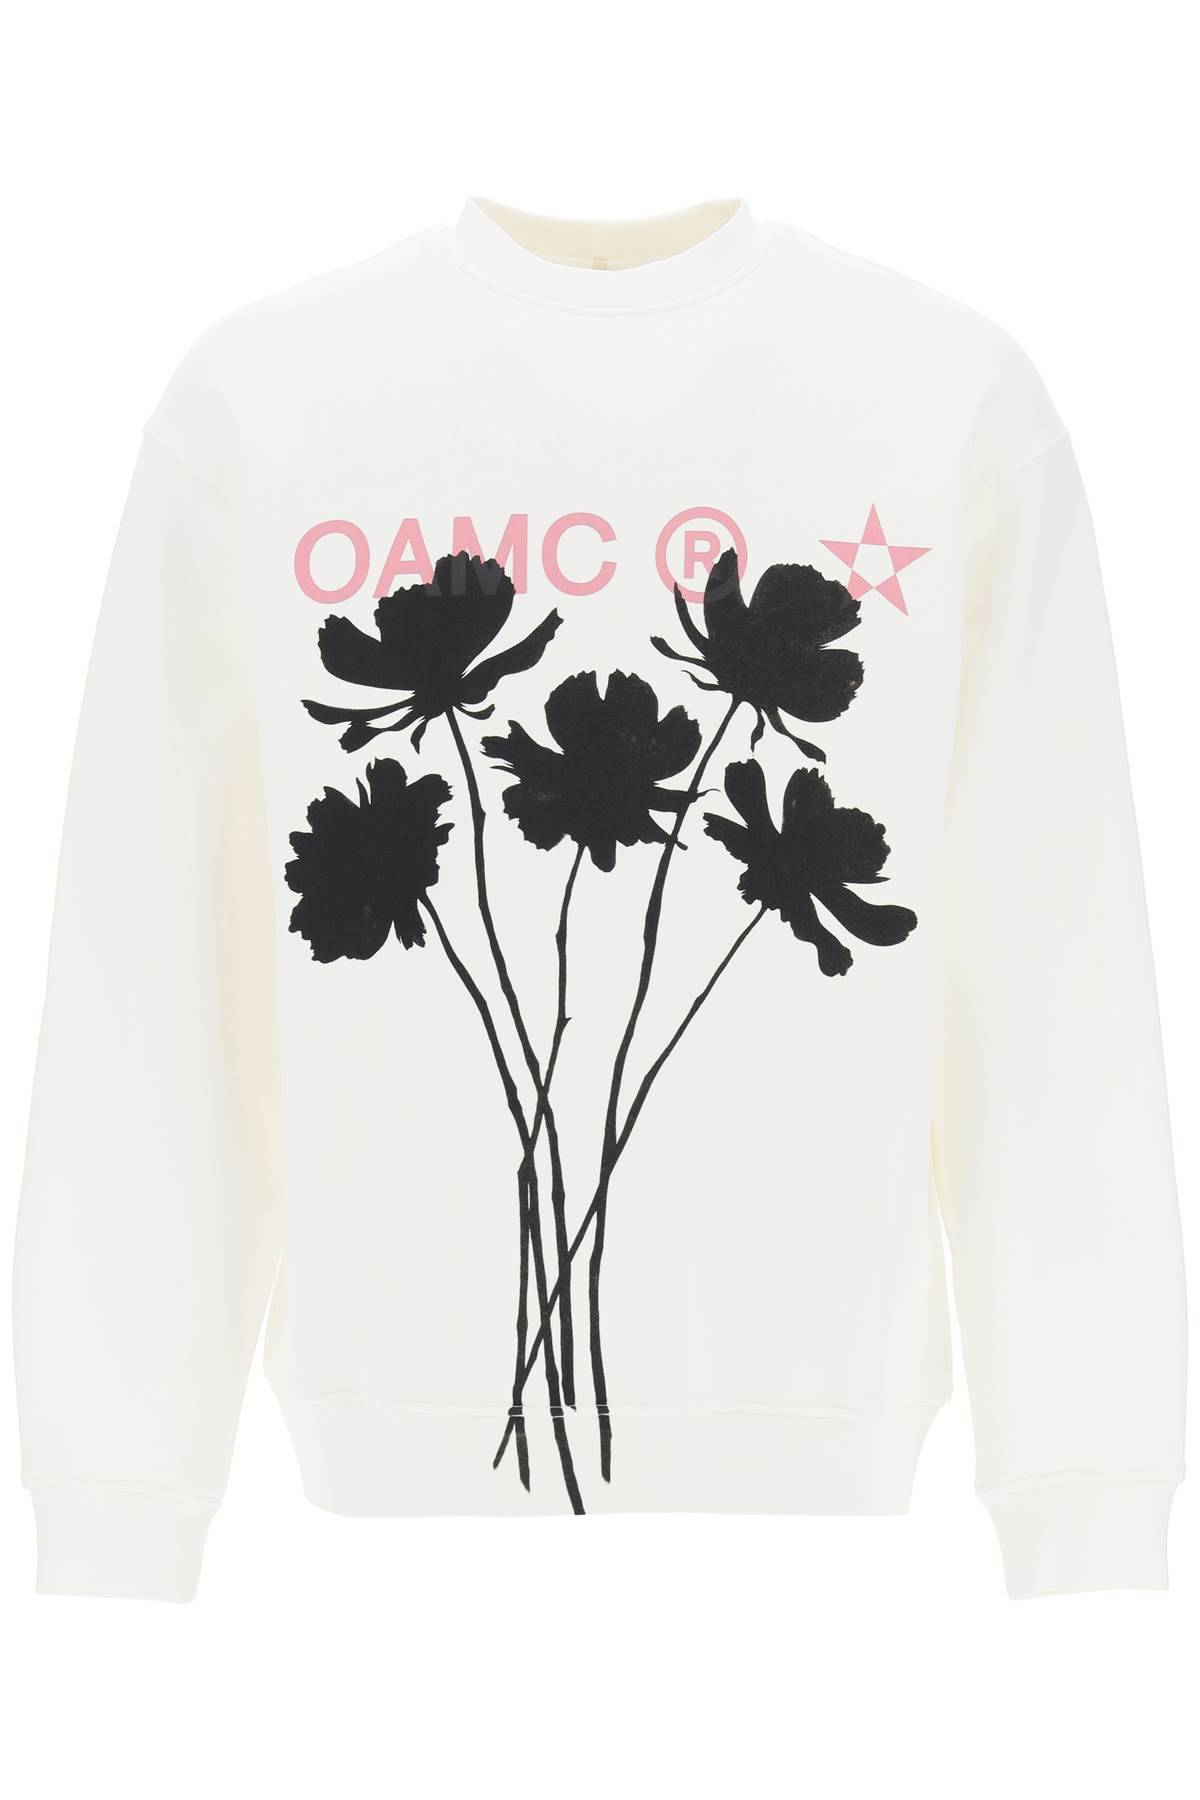 OAMC OAMC whiff sweatshirt with graphic print